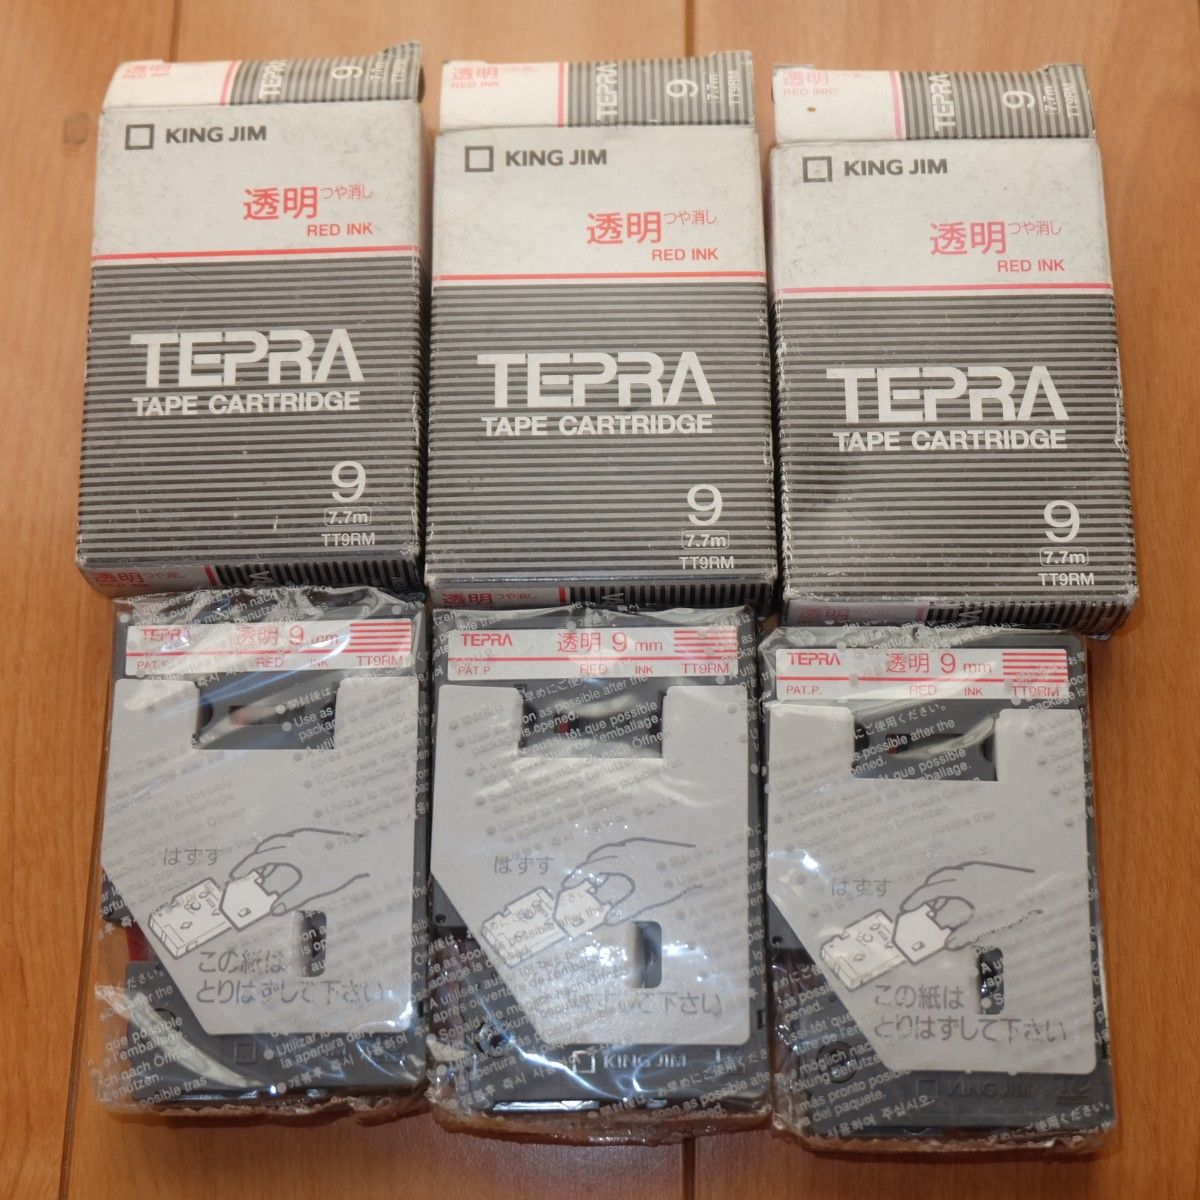 新品 3個セット キングジム TEPRA テプラ 9mm 透明つや消し 赤インク RED INK テープカートリッジ 7.7m